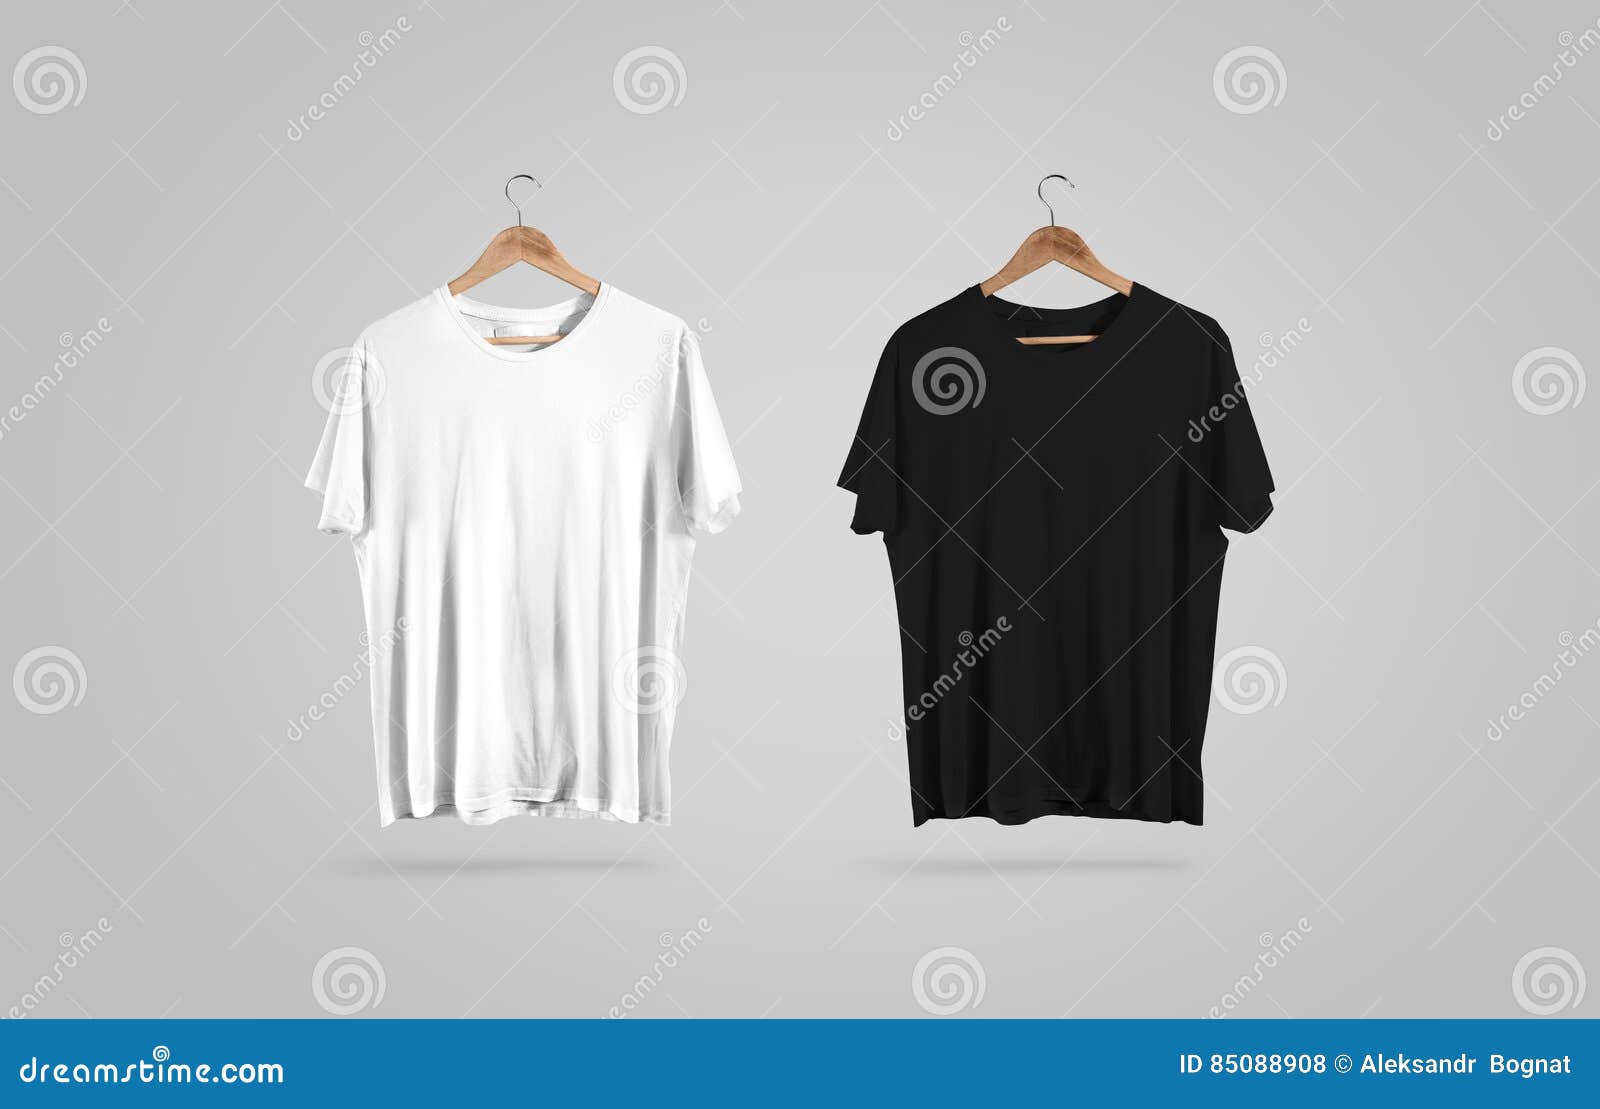 Buy > t shirt on hanger mockup > in stock